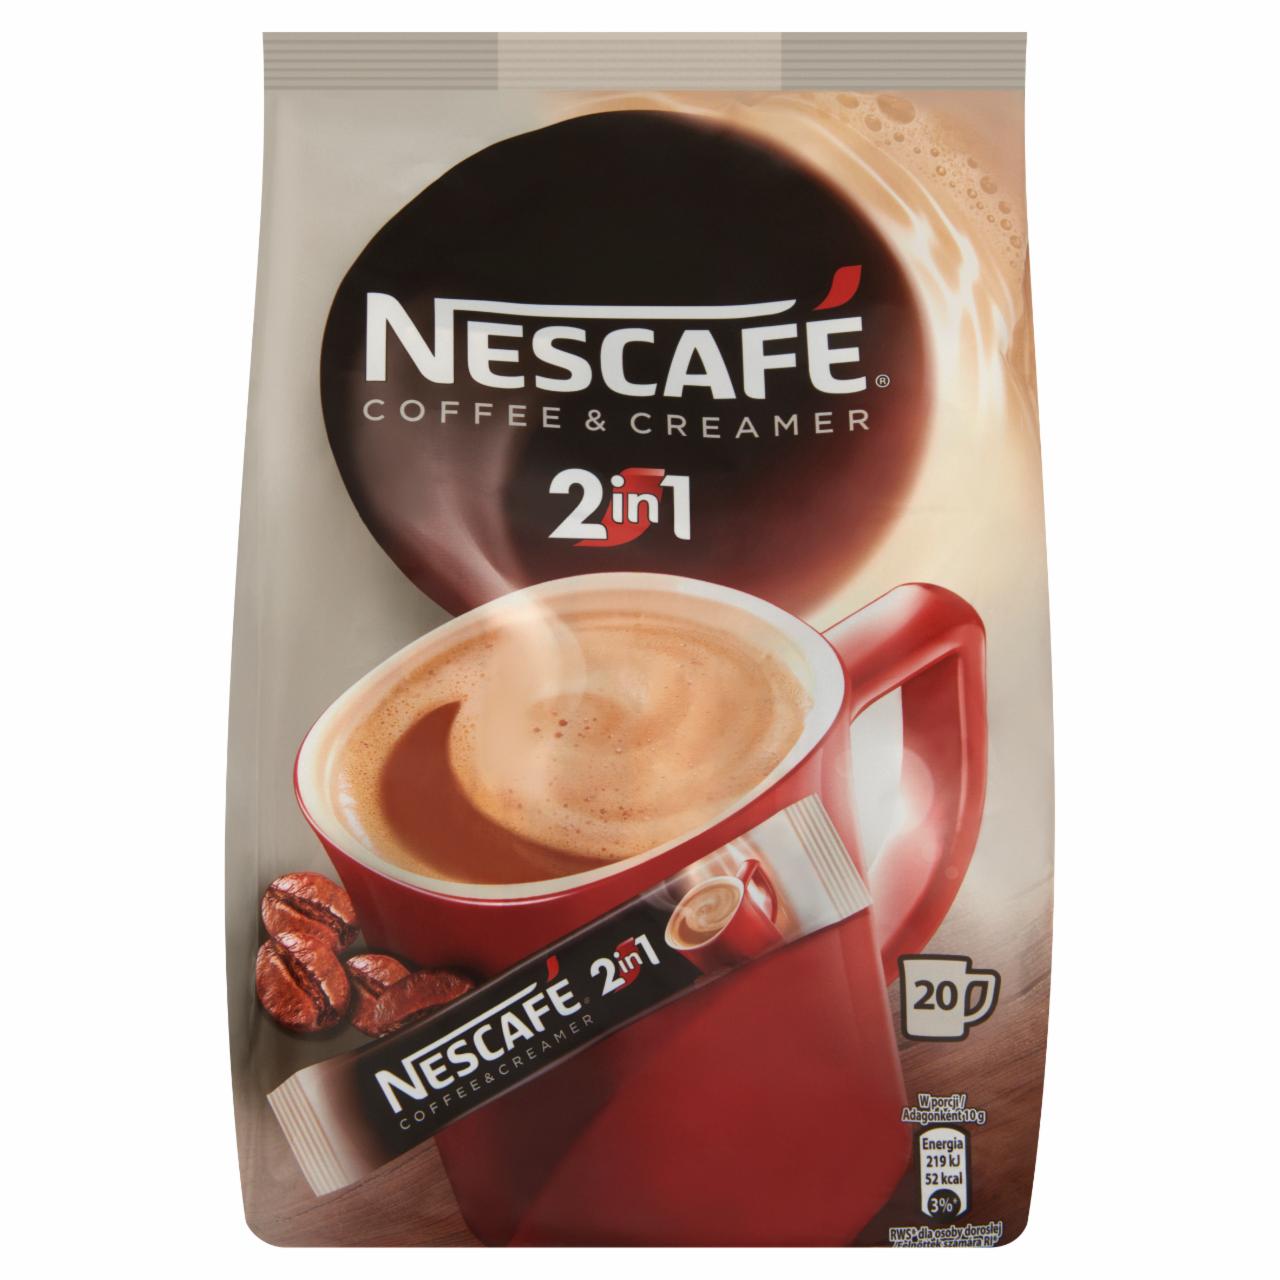 Képek - Nescafé Coffee & Creamer 2in1 azonnal oldódó kávéspecialitás 20 db 200 g